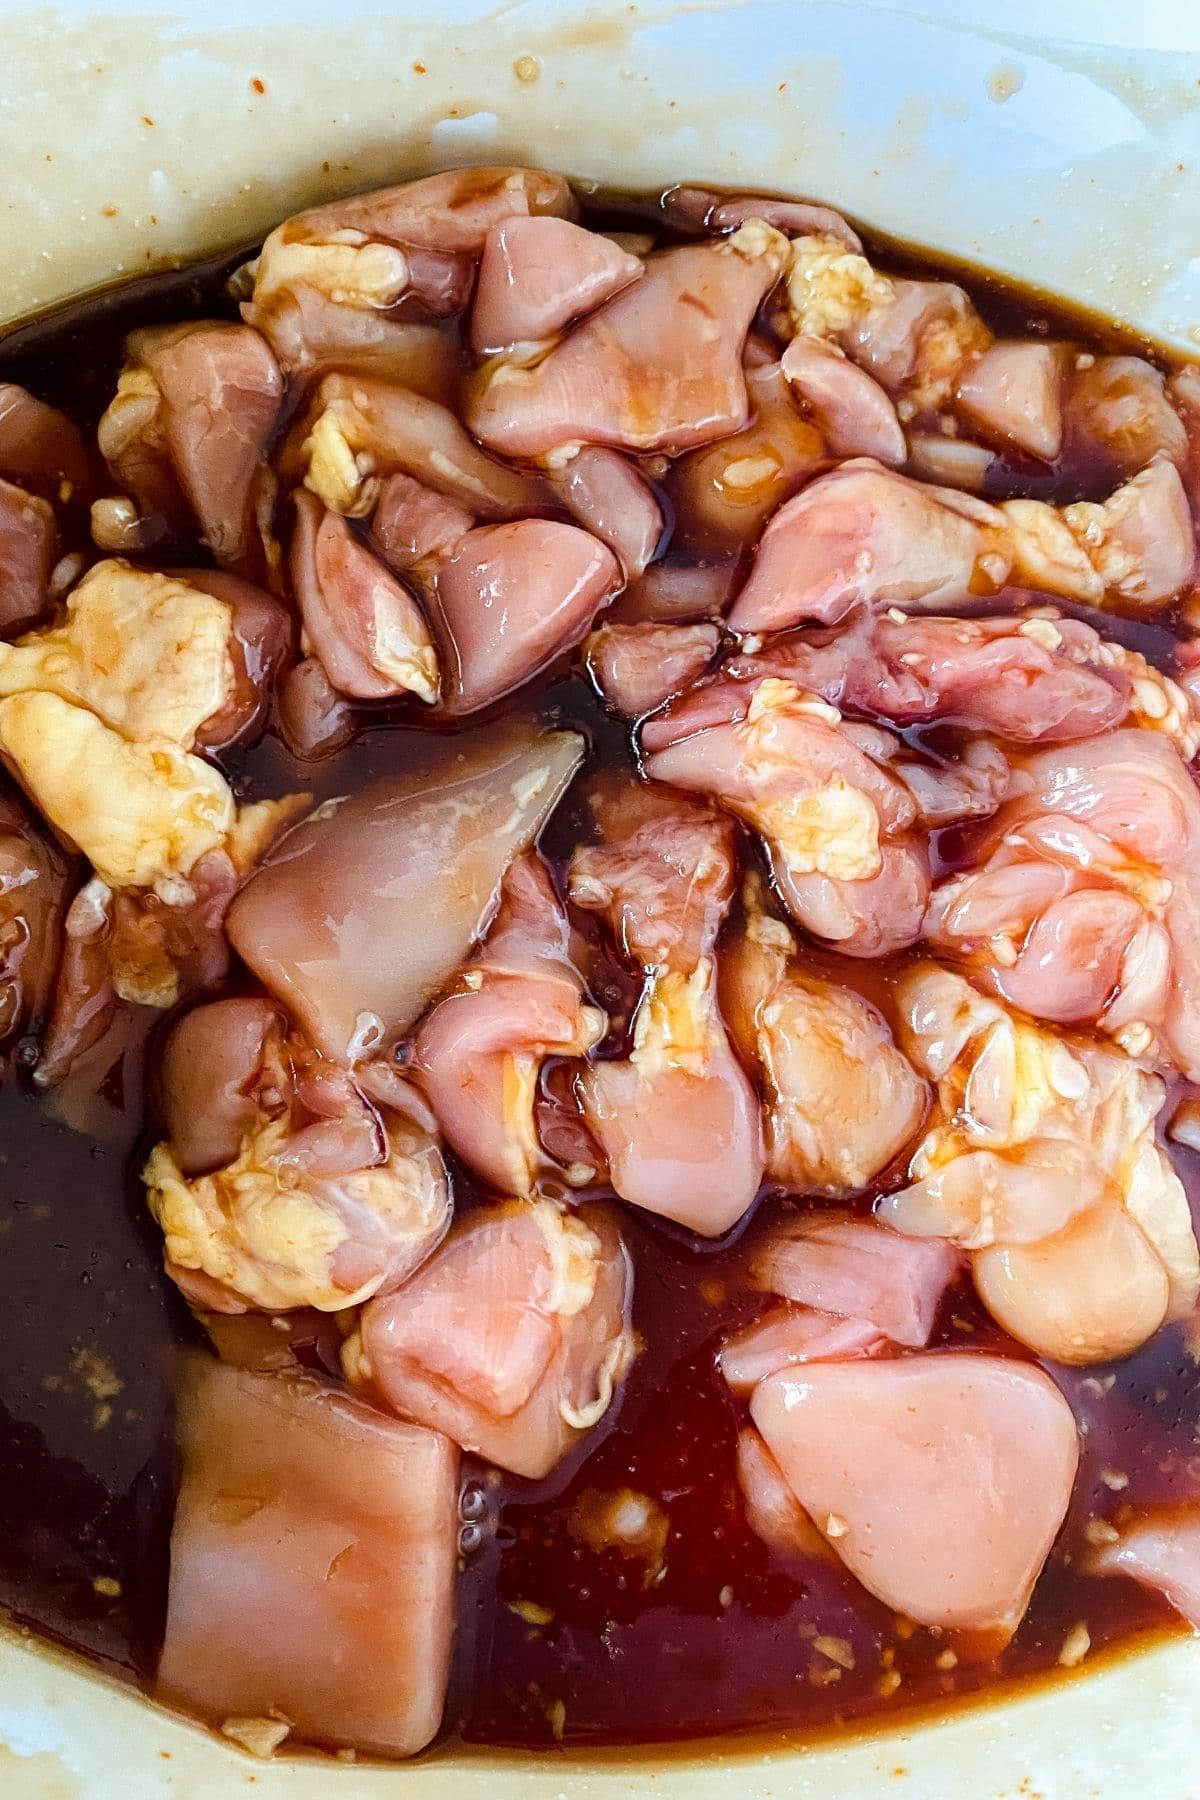 raw chicken in sauce in crockpot